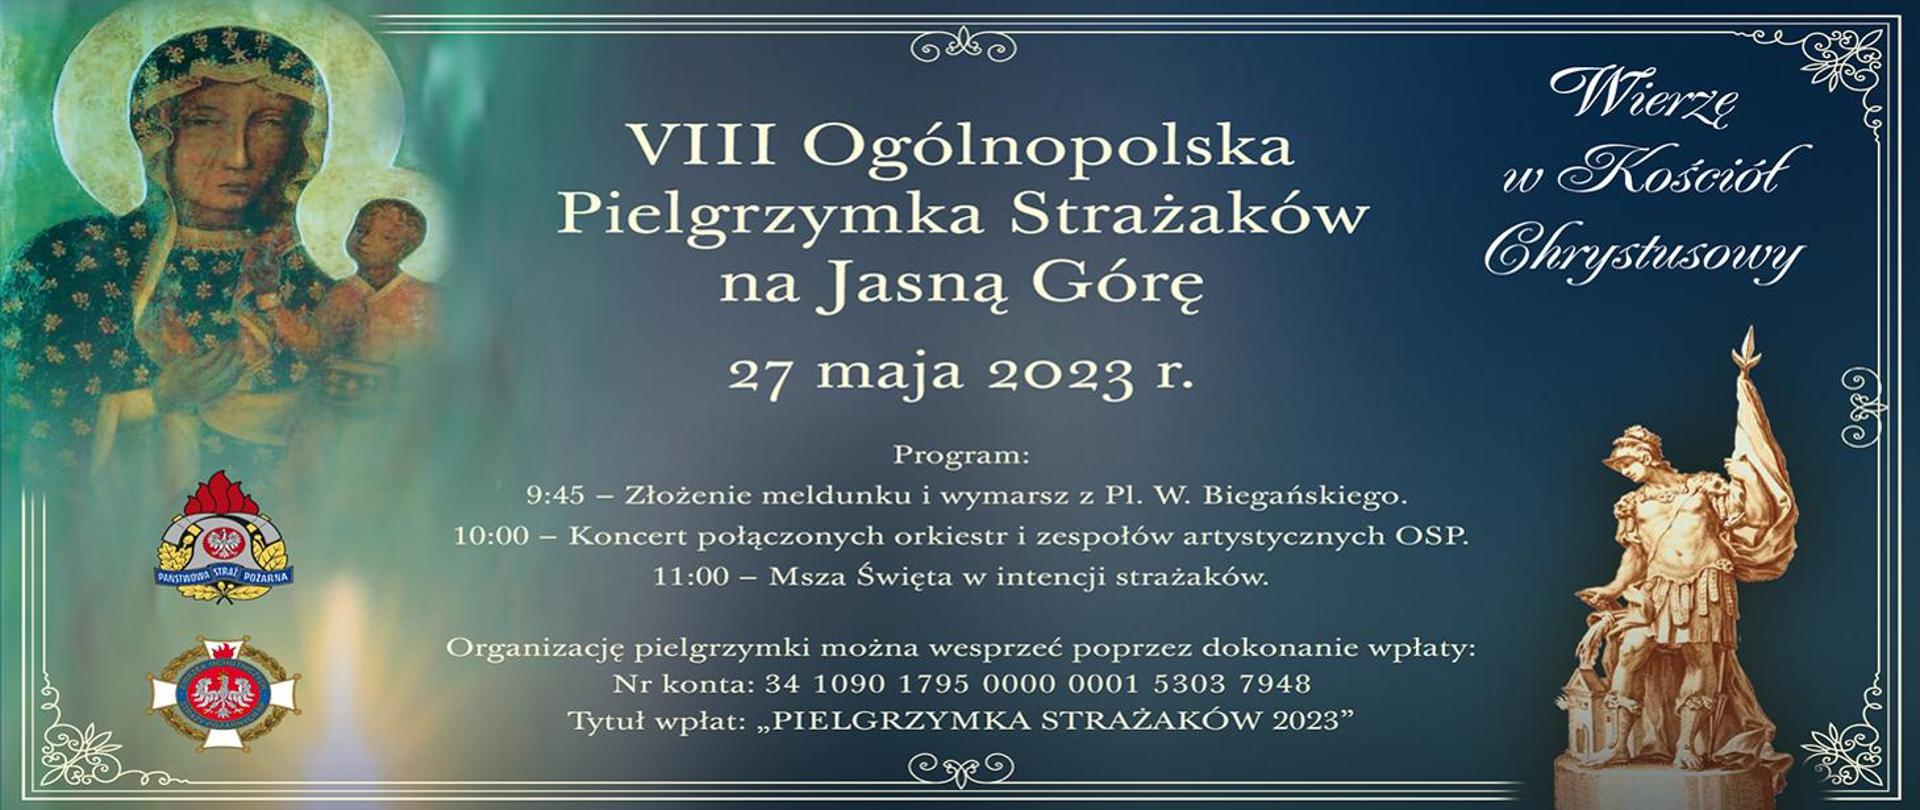 VIII Ogólnopolska Pielgrzymka Strażaków na Jasną Górę - na zdjęciu plakat z programem pielgrzymki i nr konta.